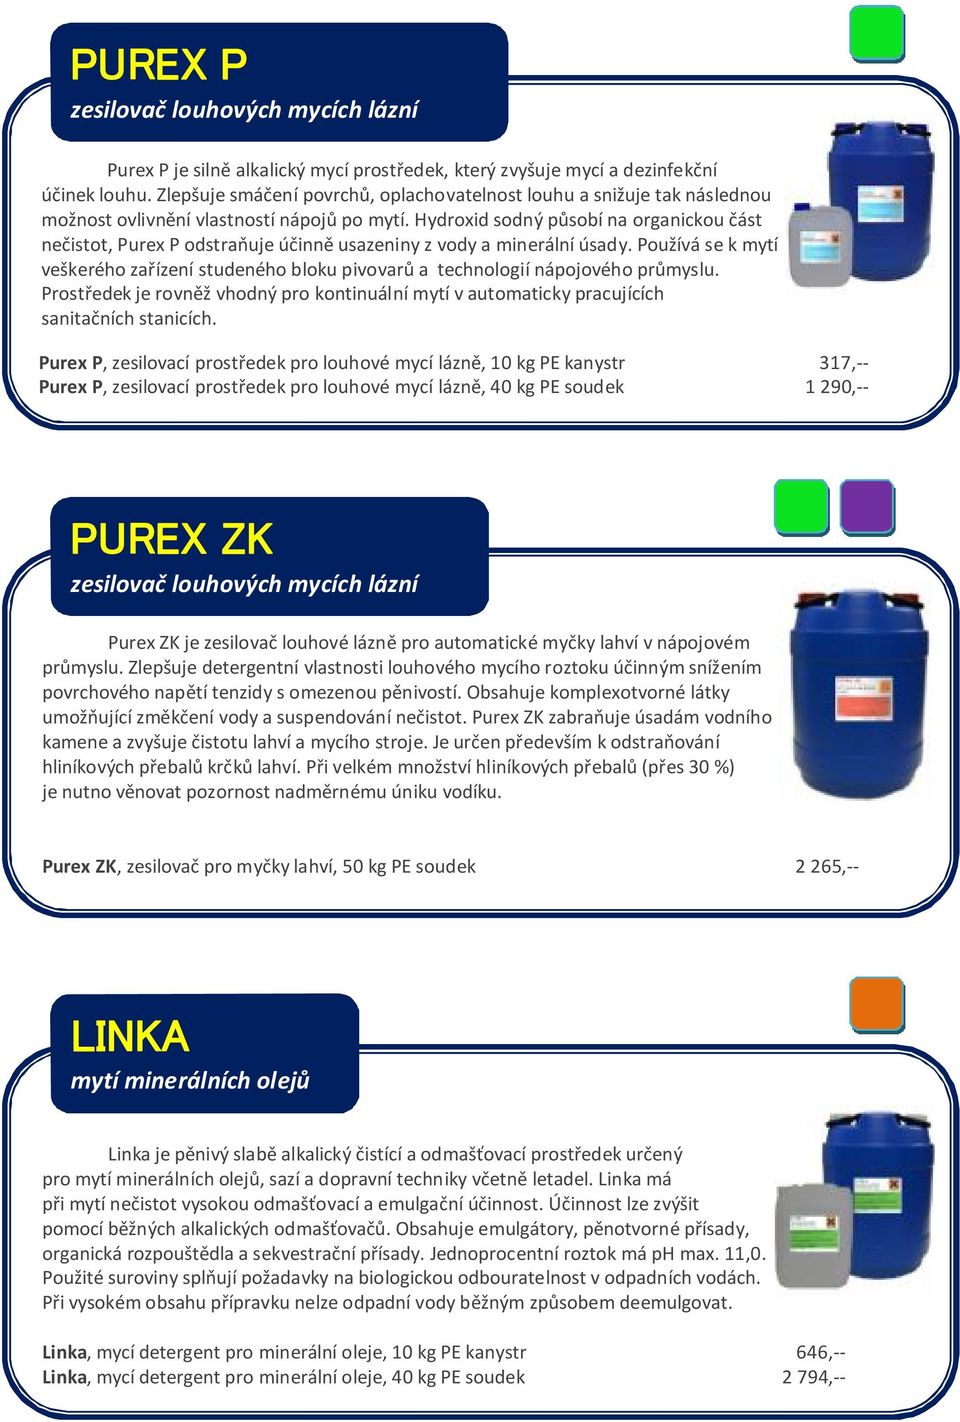 Hydroxid sodný působí na organickou část nečistot, Purex P odstraňuje účinně usazeniny z vody a minerální úsady.